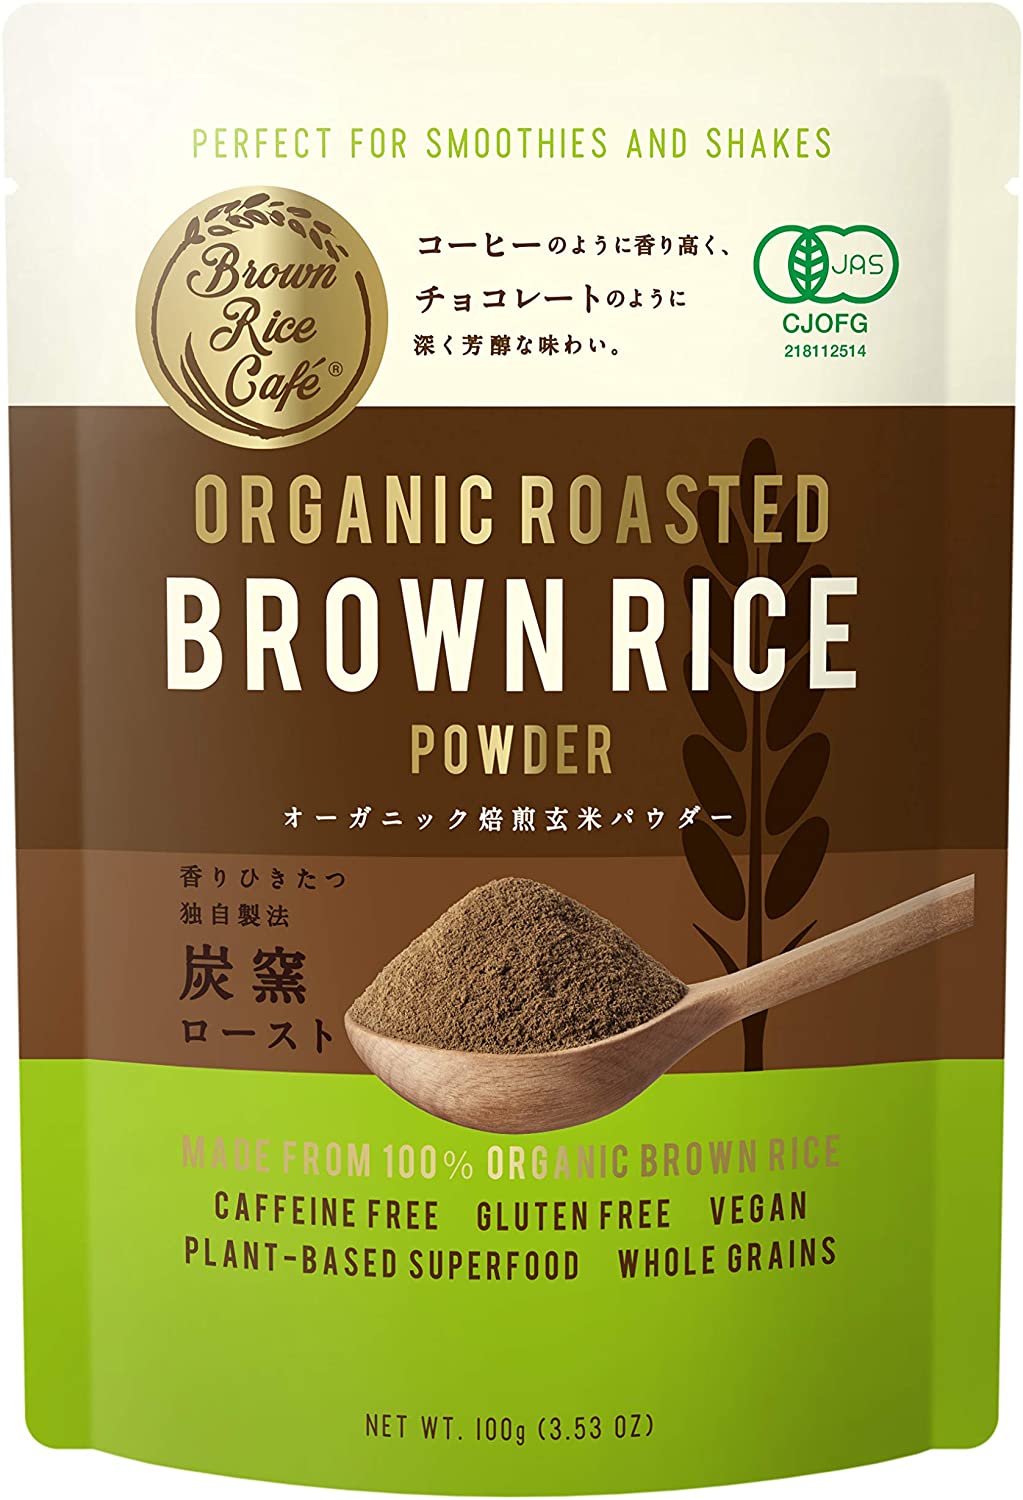 Brown Rice Cafe オーガニック焙煎玄米パウダー